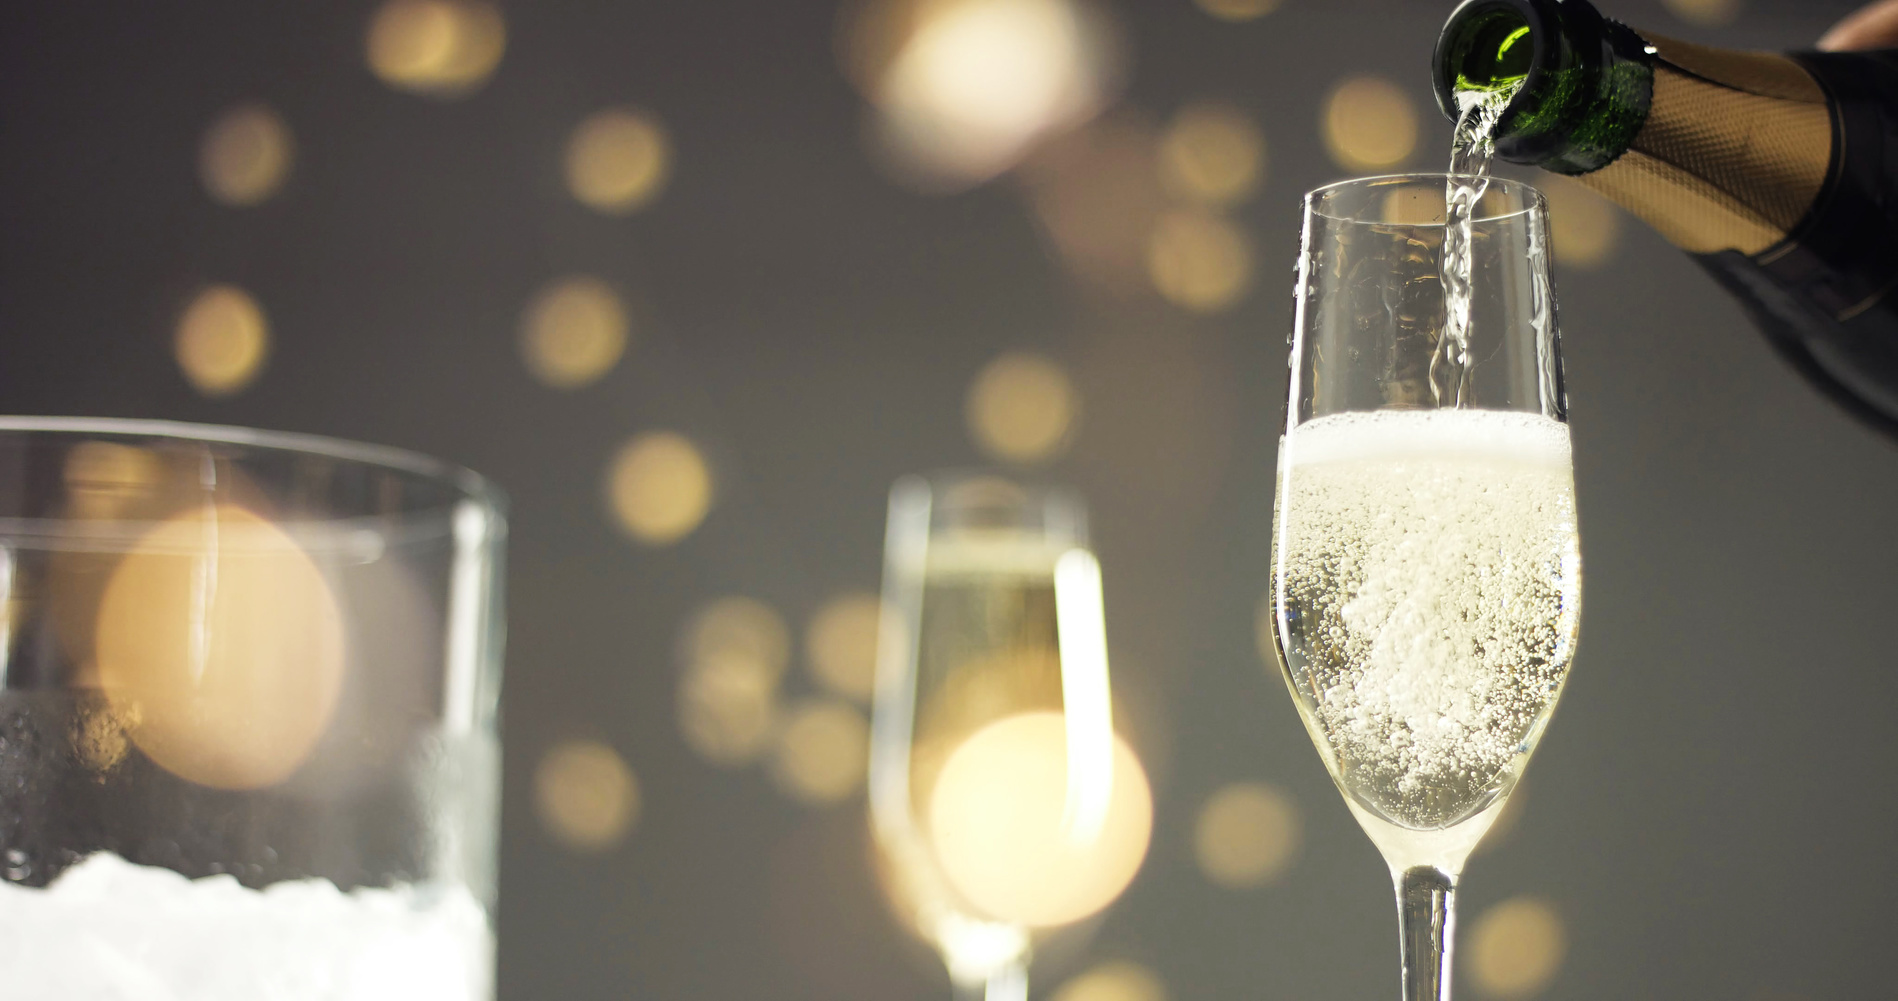 Dans un verre parfaitement propre, le champagne ne ferait pas de bulle. © Anastasia, fotolia